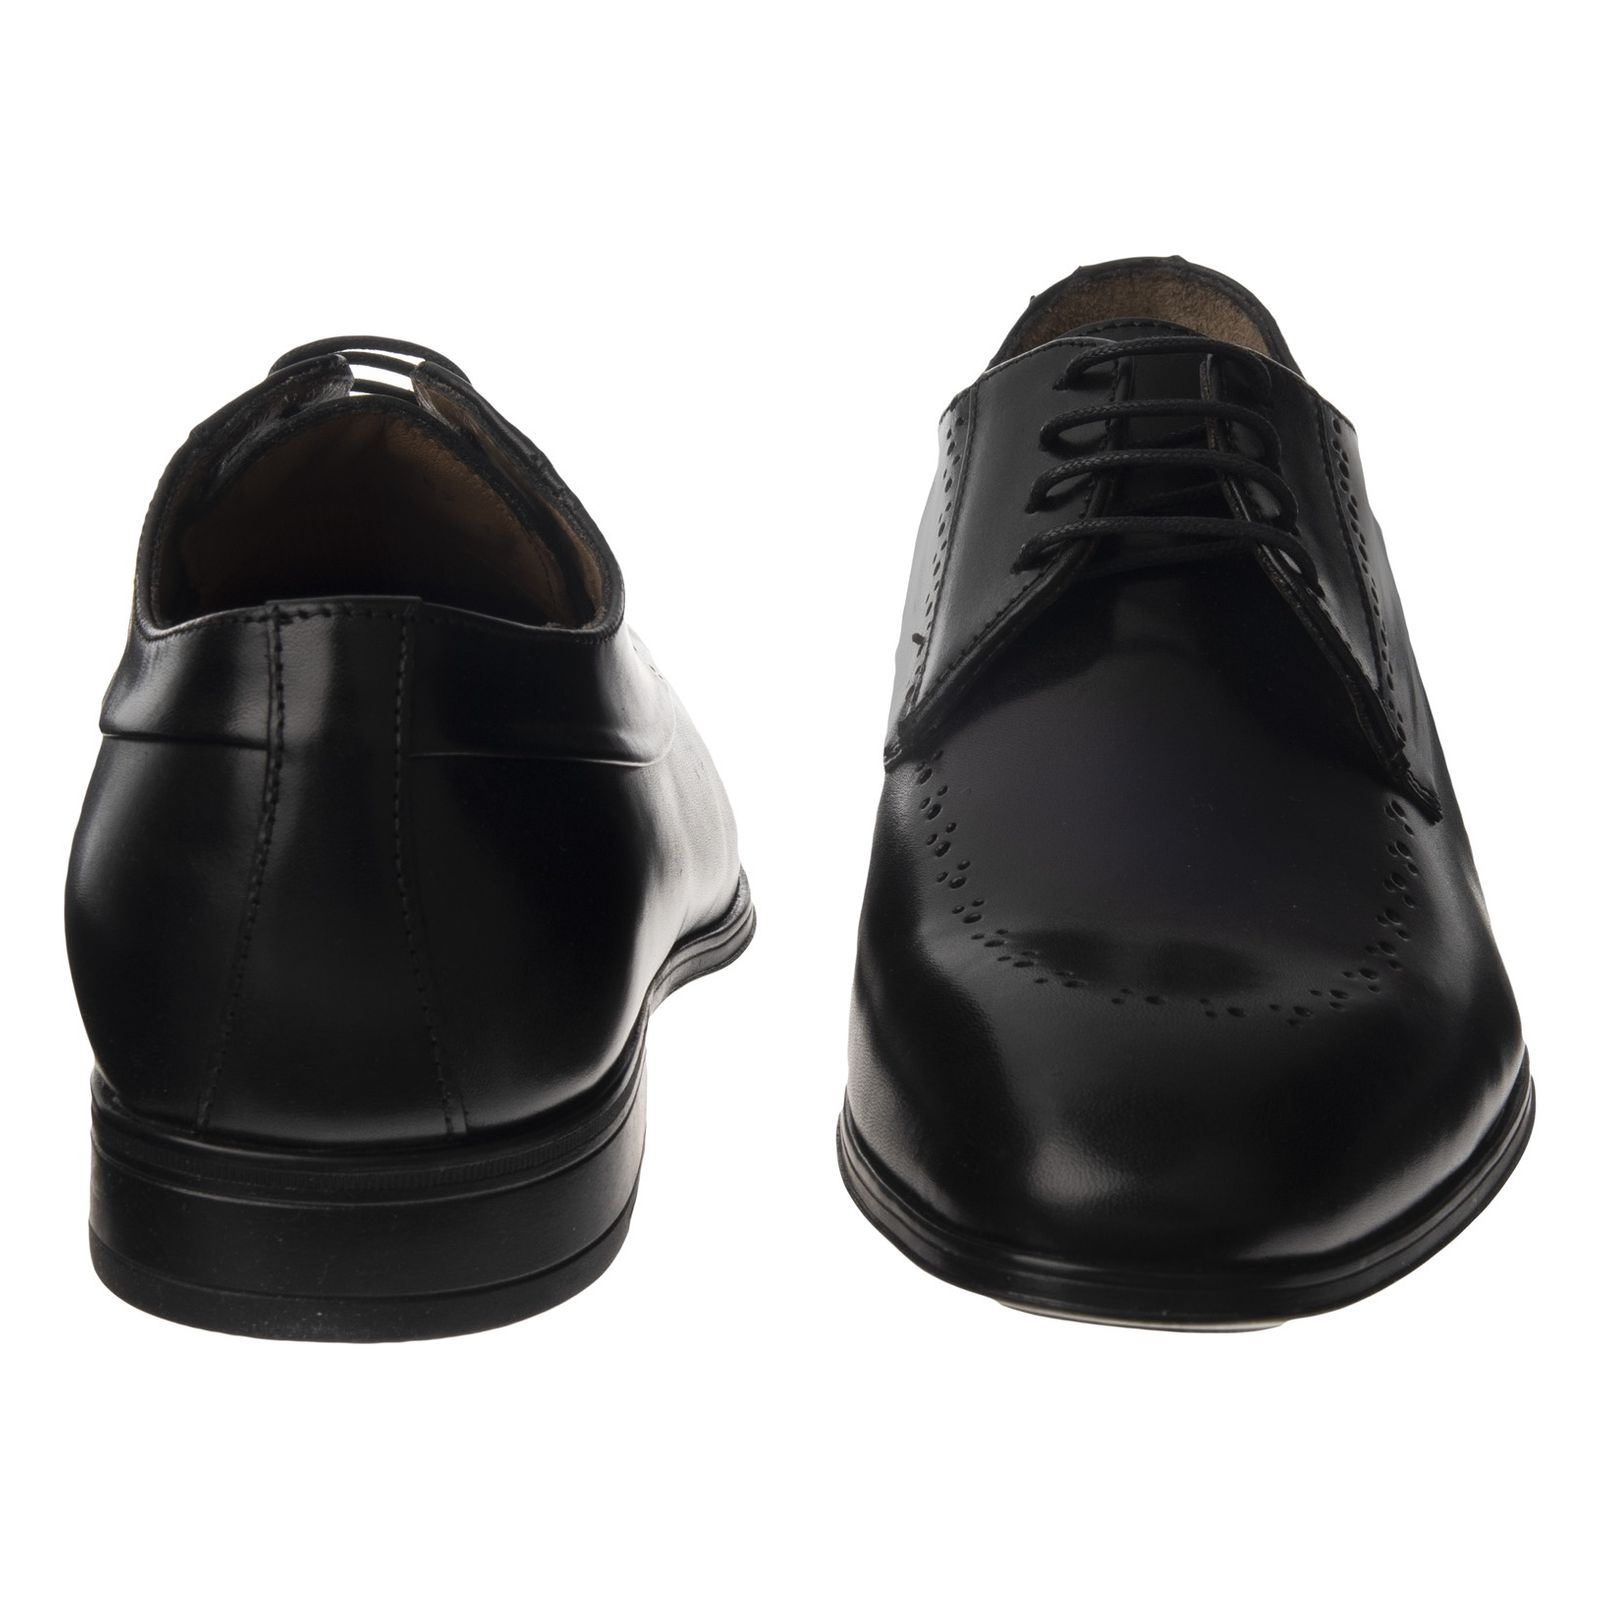 کفش مردانه گابور مدل 68.186.57 - مشکی - 5